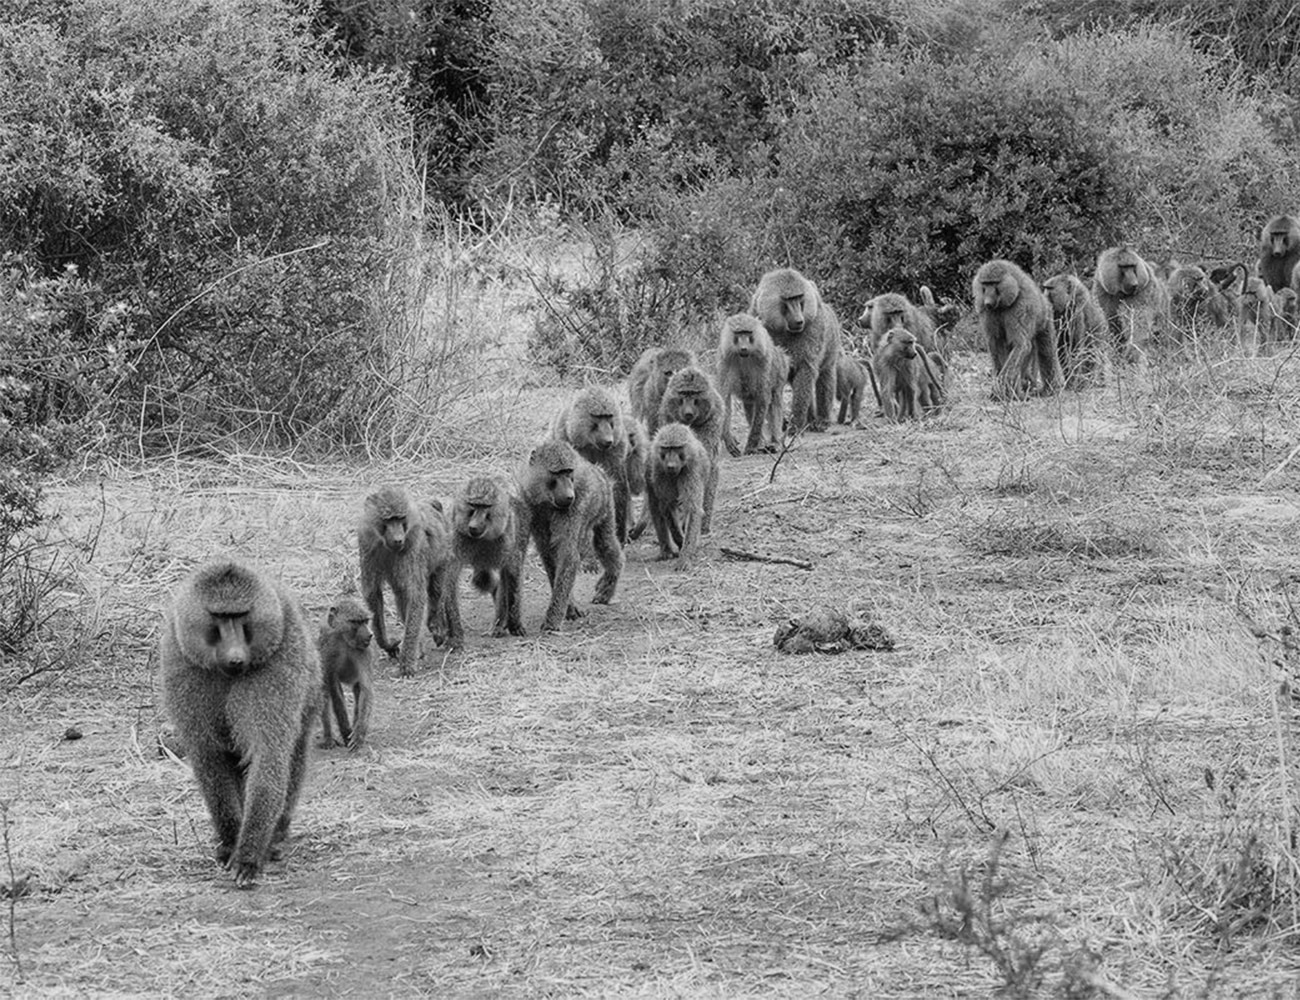 Animals at Lake Manyara National Park